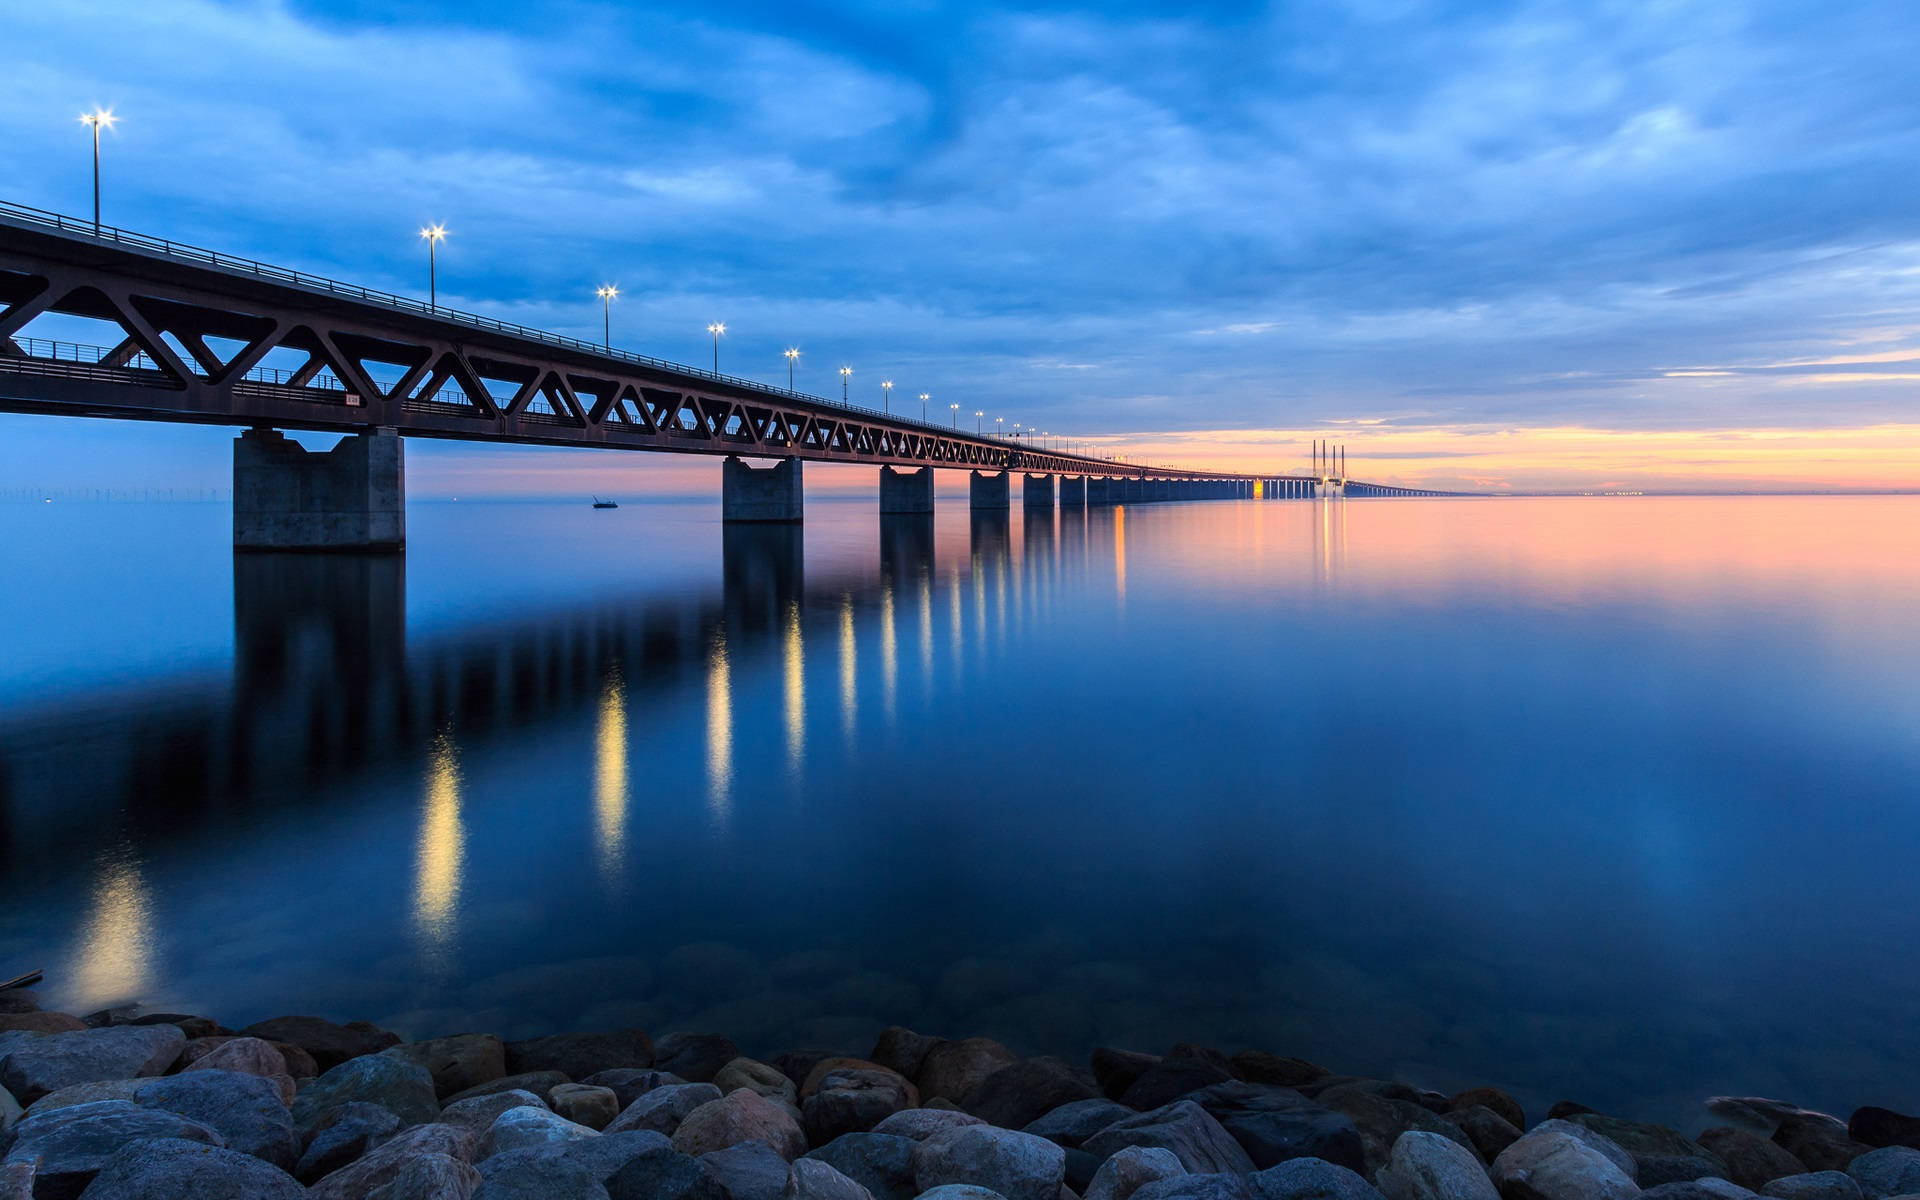 Broen Oresund og den smukke solnedgang. Wallpaper